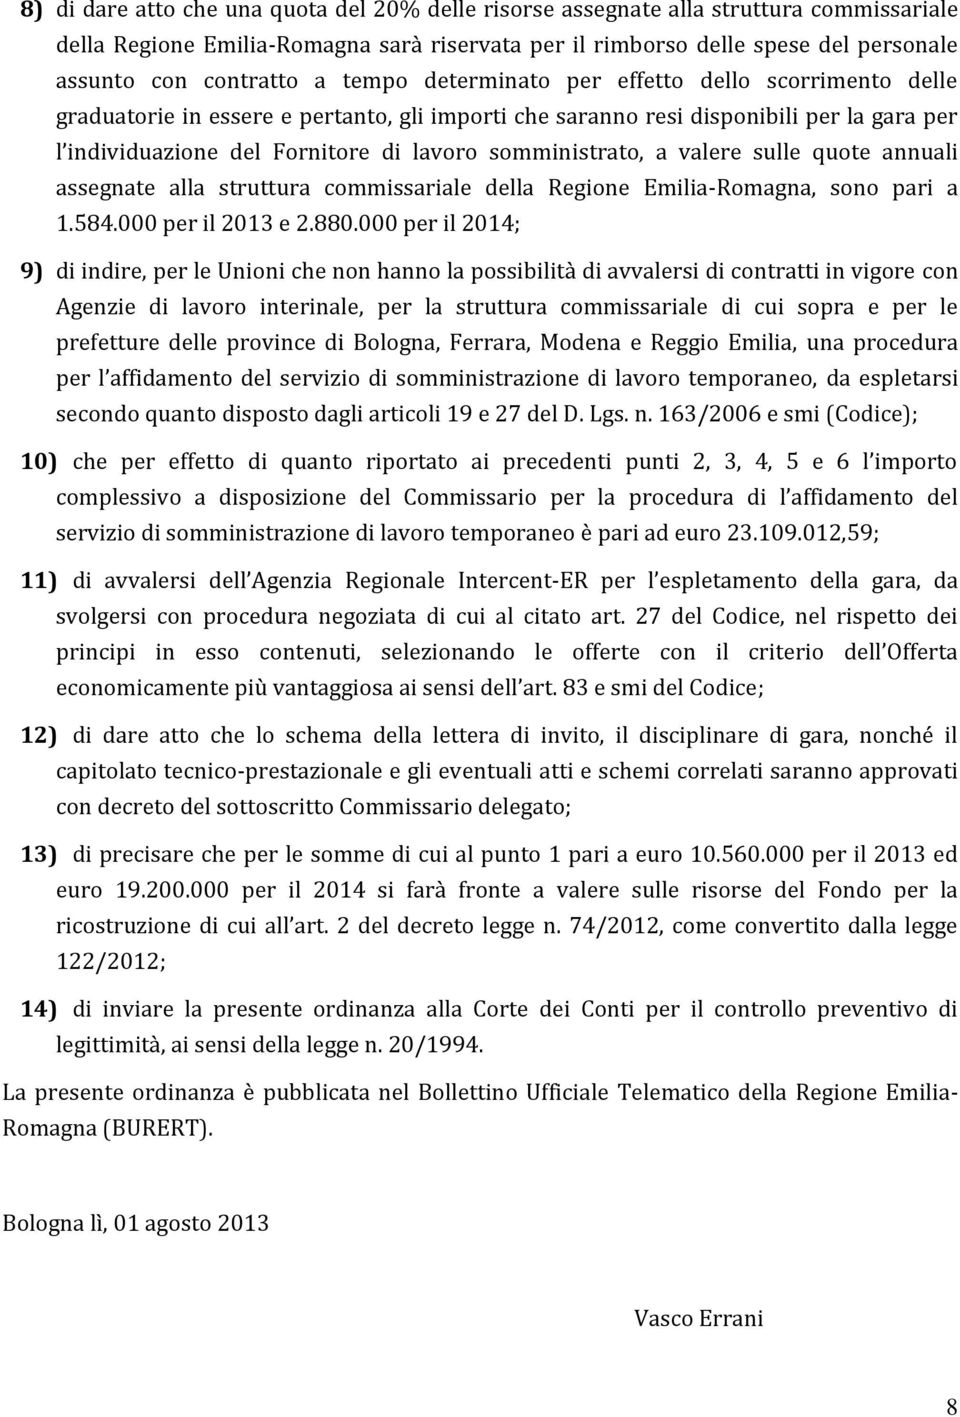 somministrato, a valere sulle quote annuali assegnate alla struttura commissariale della Regione Emilia-Romagna, sono pari a 1.584.000 per il 2013 e 2.880.